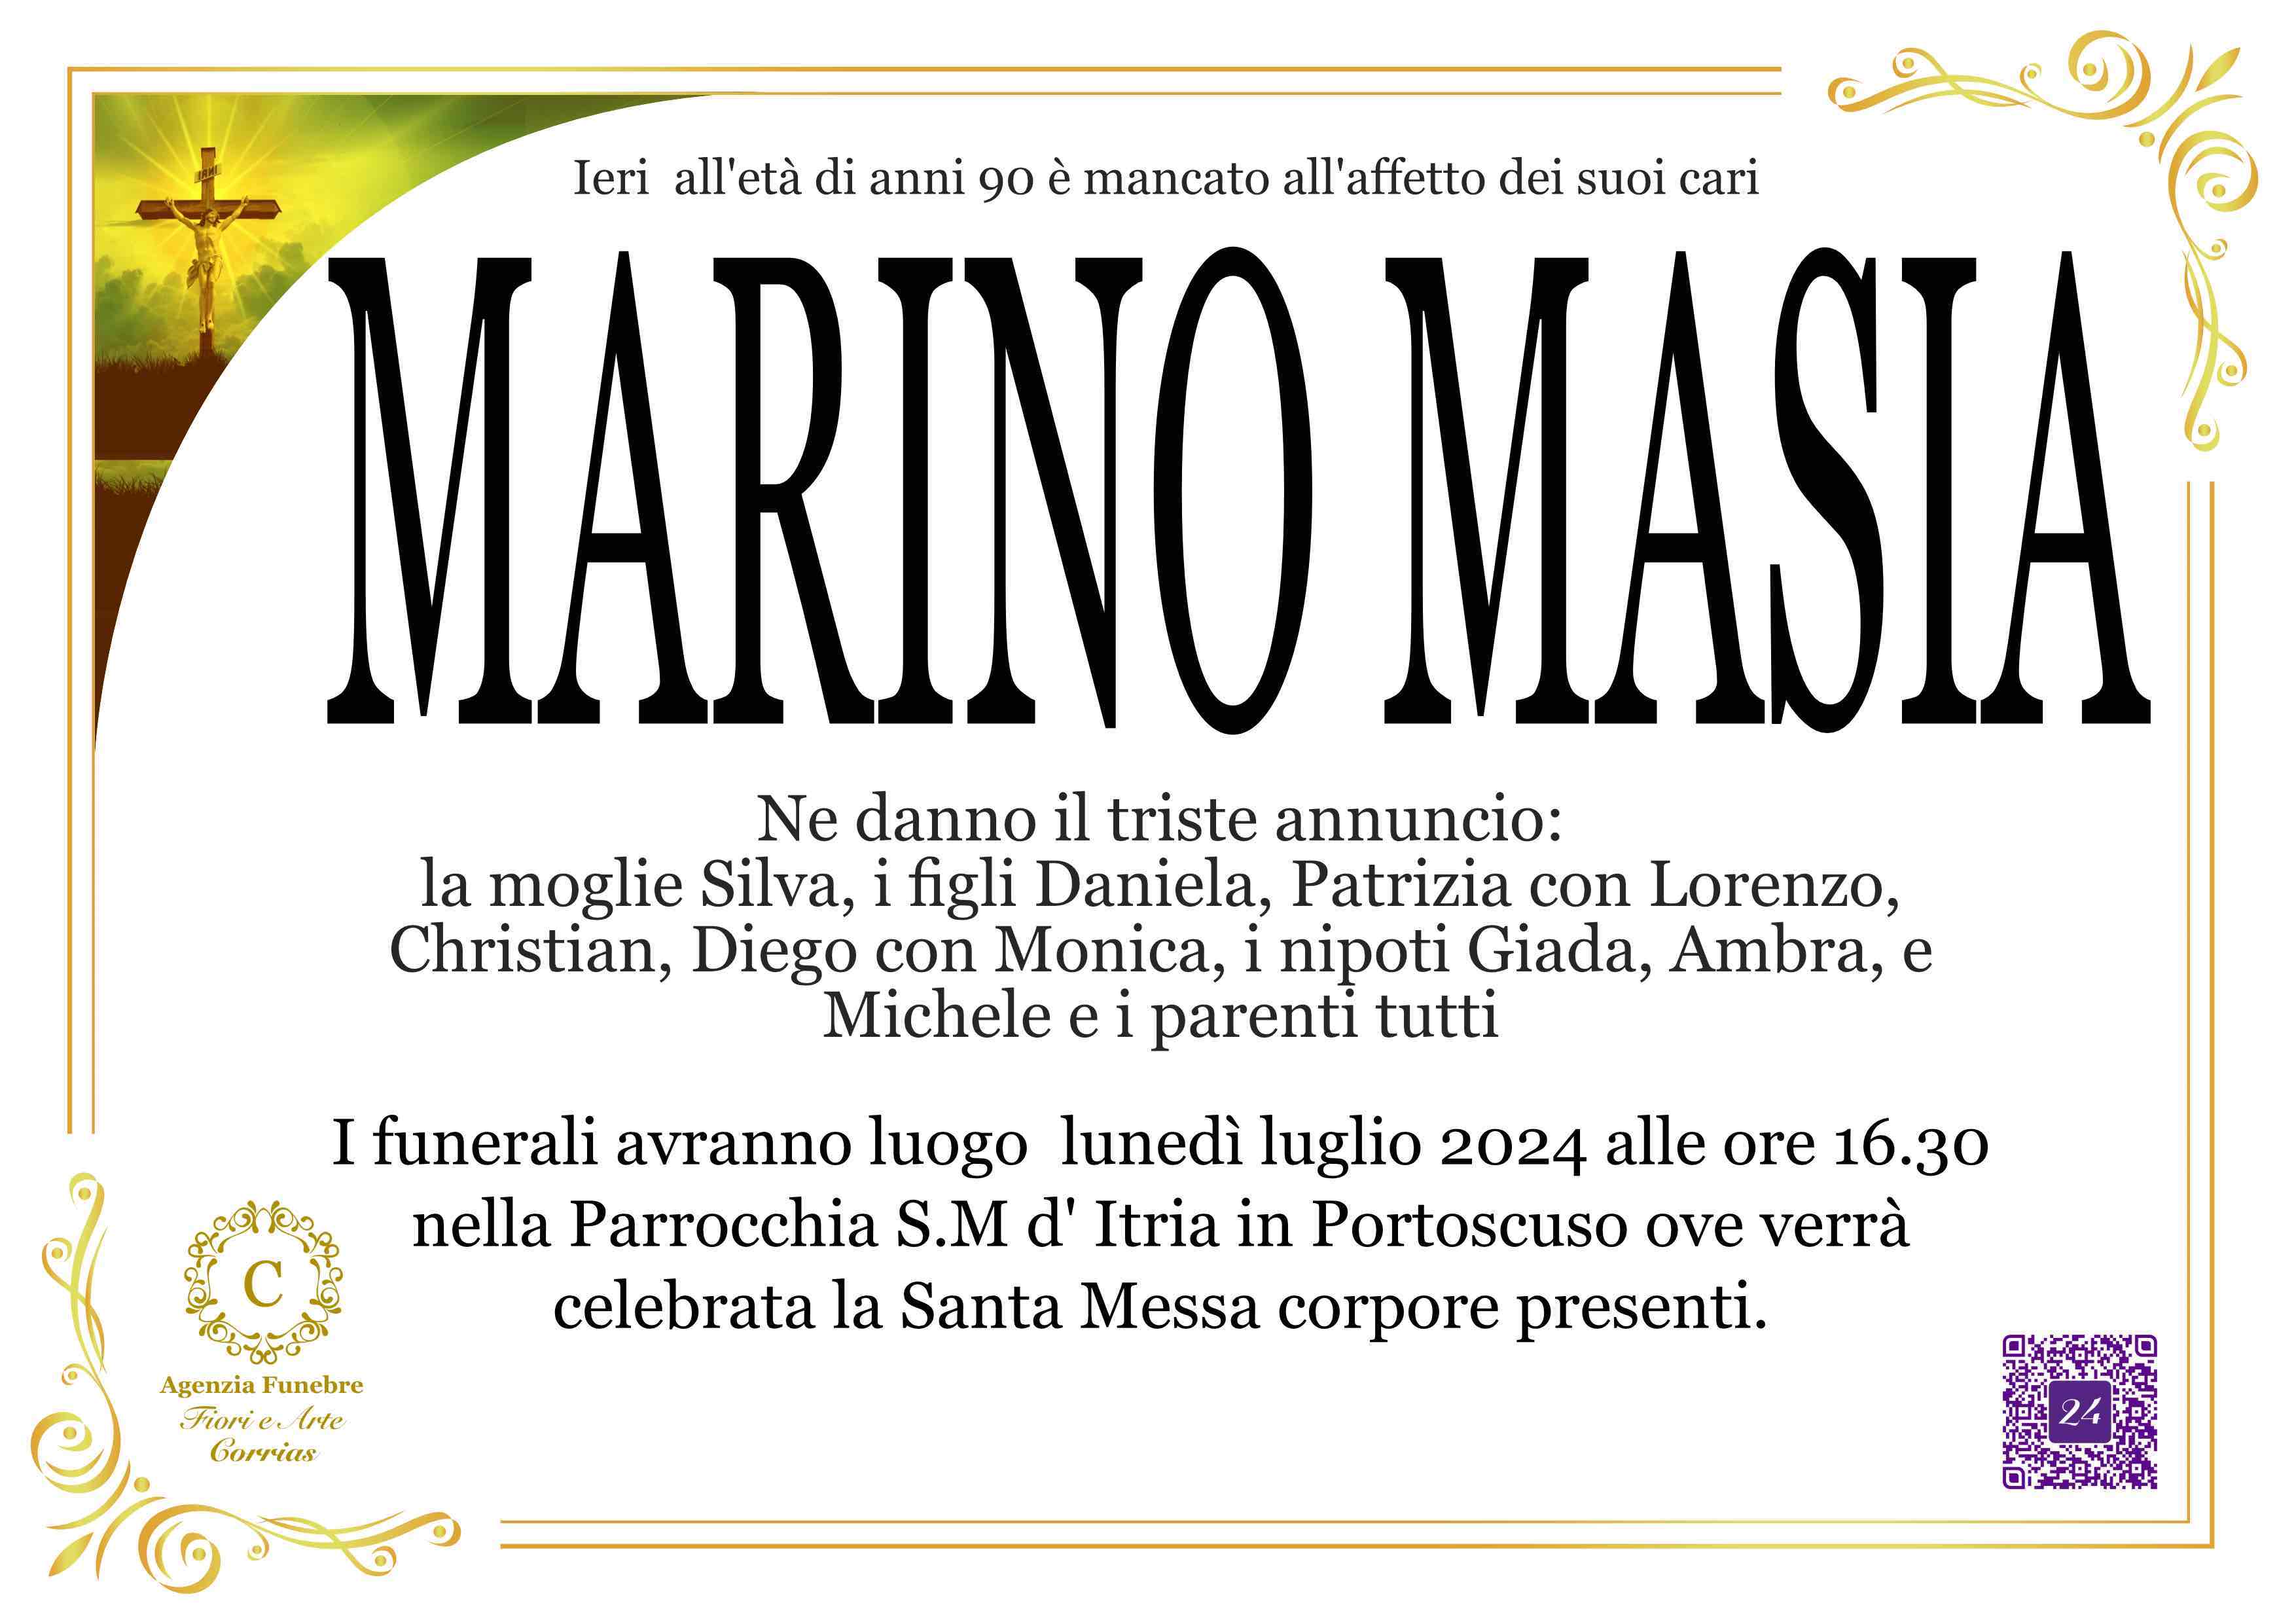 Marino Masia